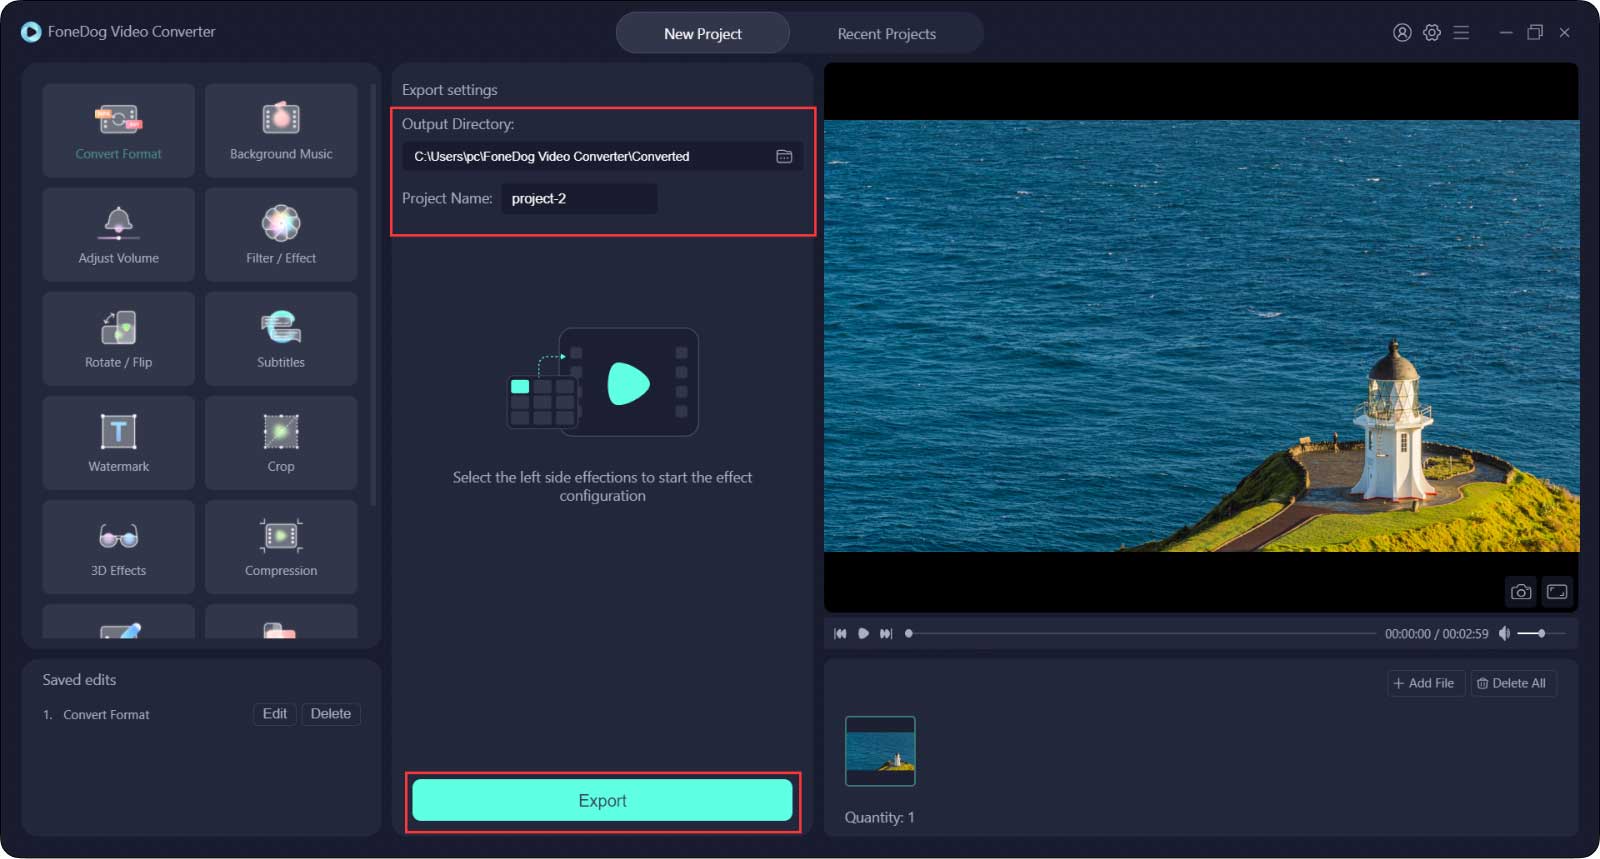 Le meilleur convertisseur vidéo - FoneDog Video Converter-Export